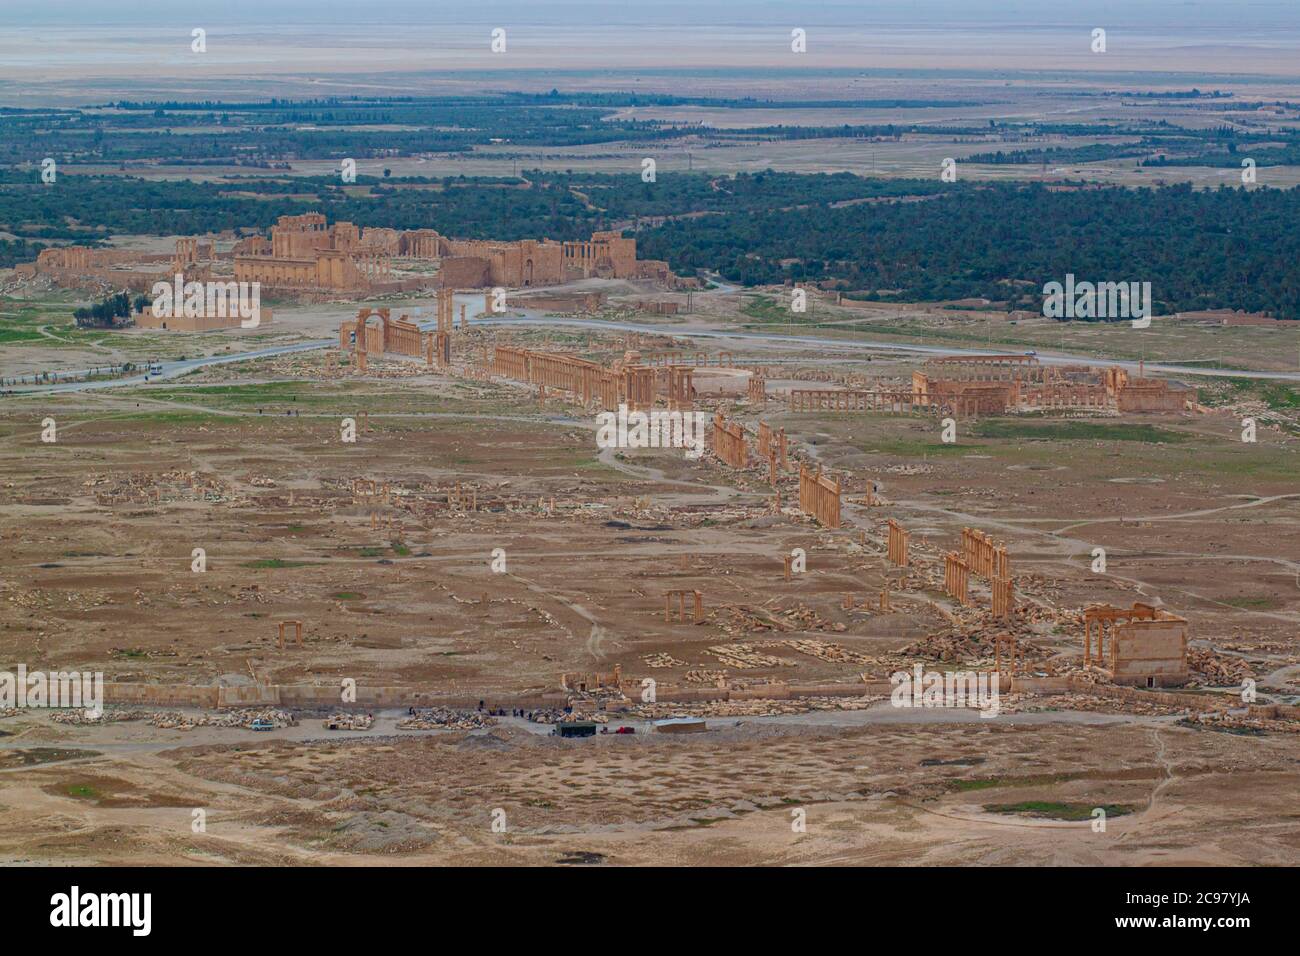 Vue aérienne des ruines de l'ancienne ville de Palmyra avant le début de la guerre civile en Syrie. L'image présente une ancienne route avec des piliers sur le bot Banque D'Images